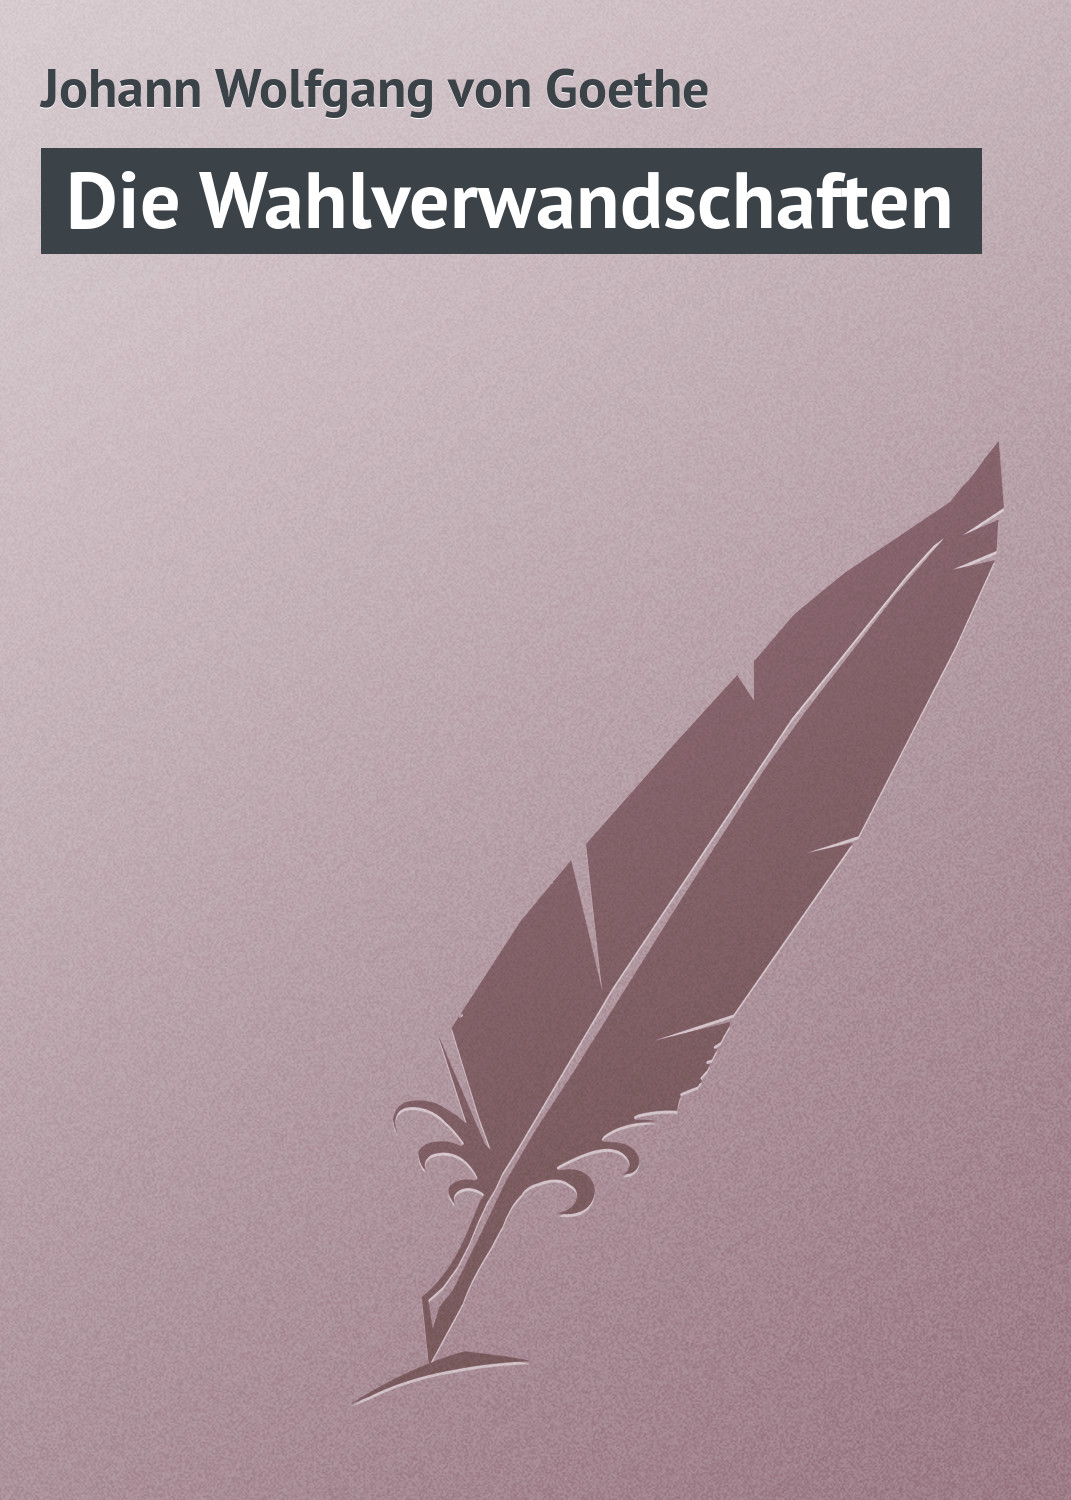 Книга Die Wahlverwandschaften из серии , созданная Johann Wolfgang, может относится к жанру Зарубежная старинная литература, Зарубежная классика. Стоимость электронной книги Die Wahlverwandschaften с идентификатором 21105262 составляет 5.99 руб.